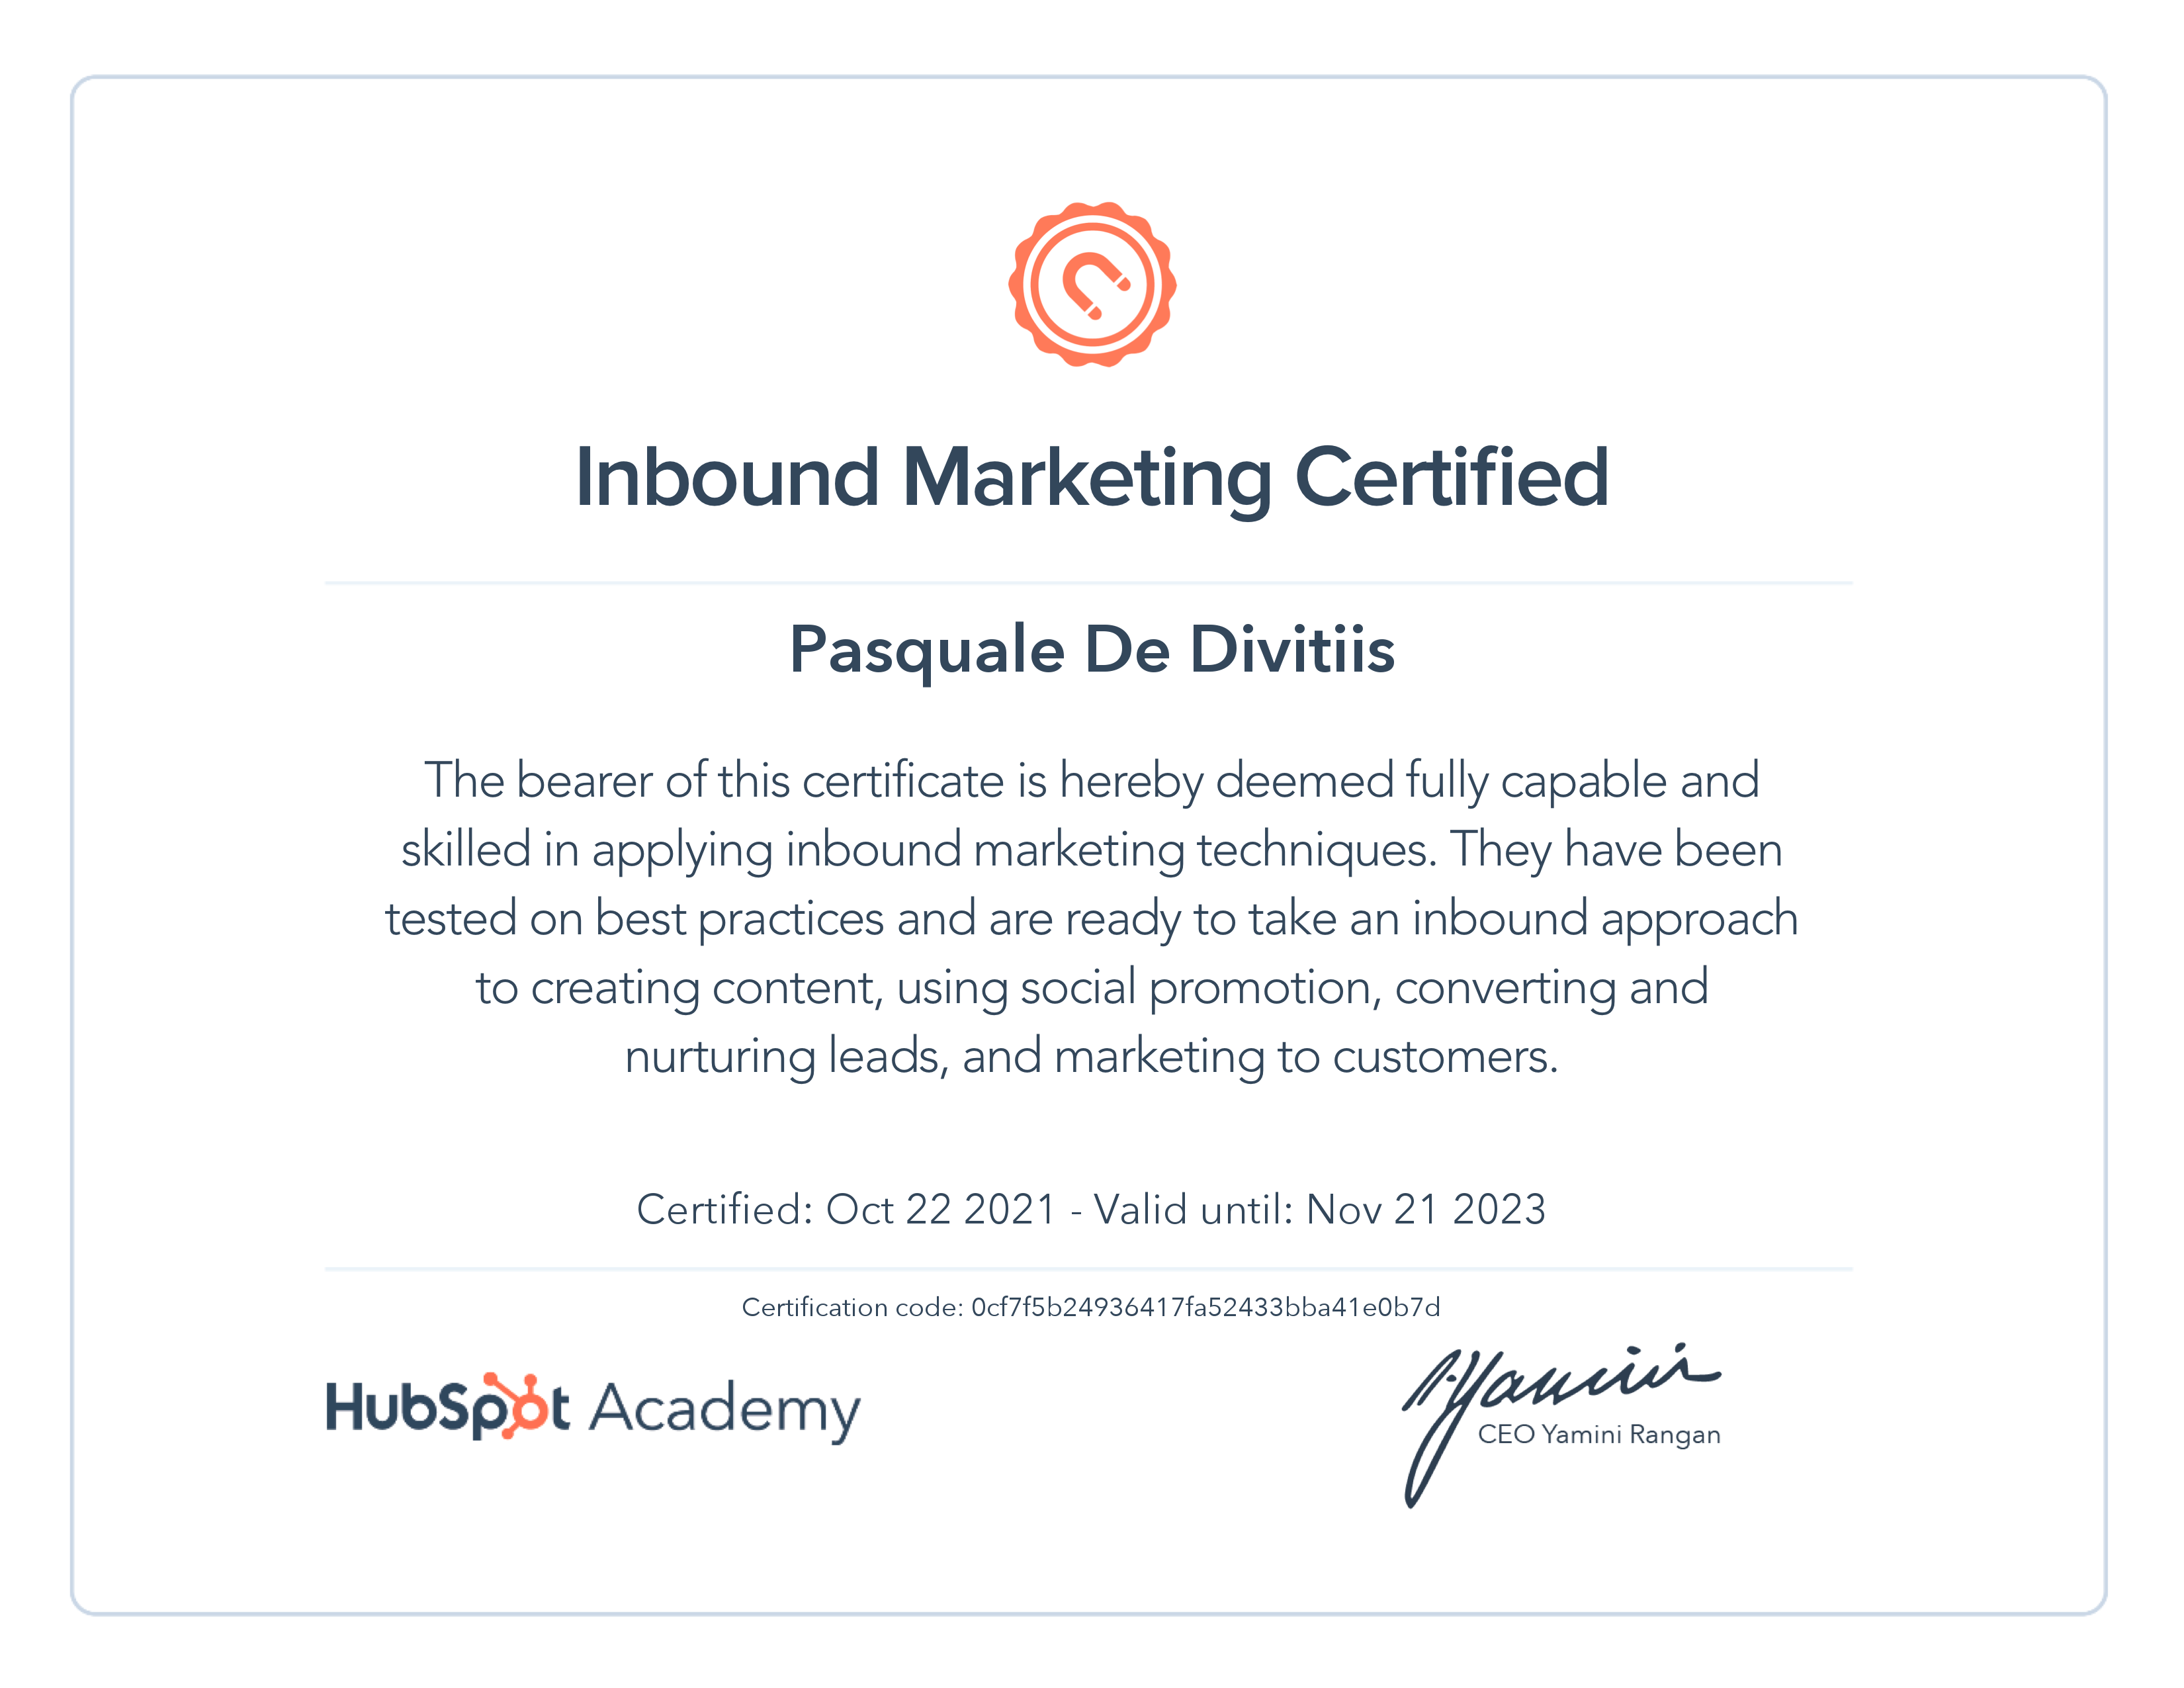 HubSpot Academy / Inbound Marketing Certification 